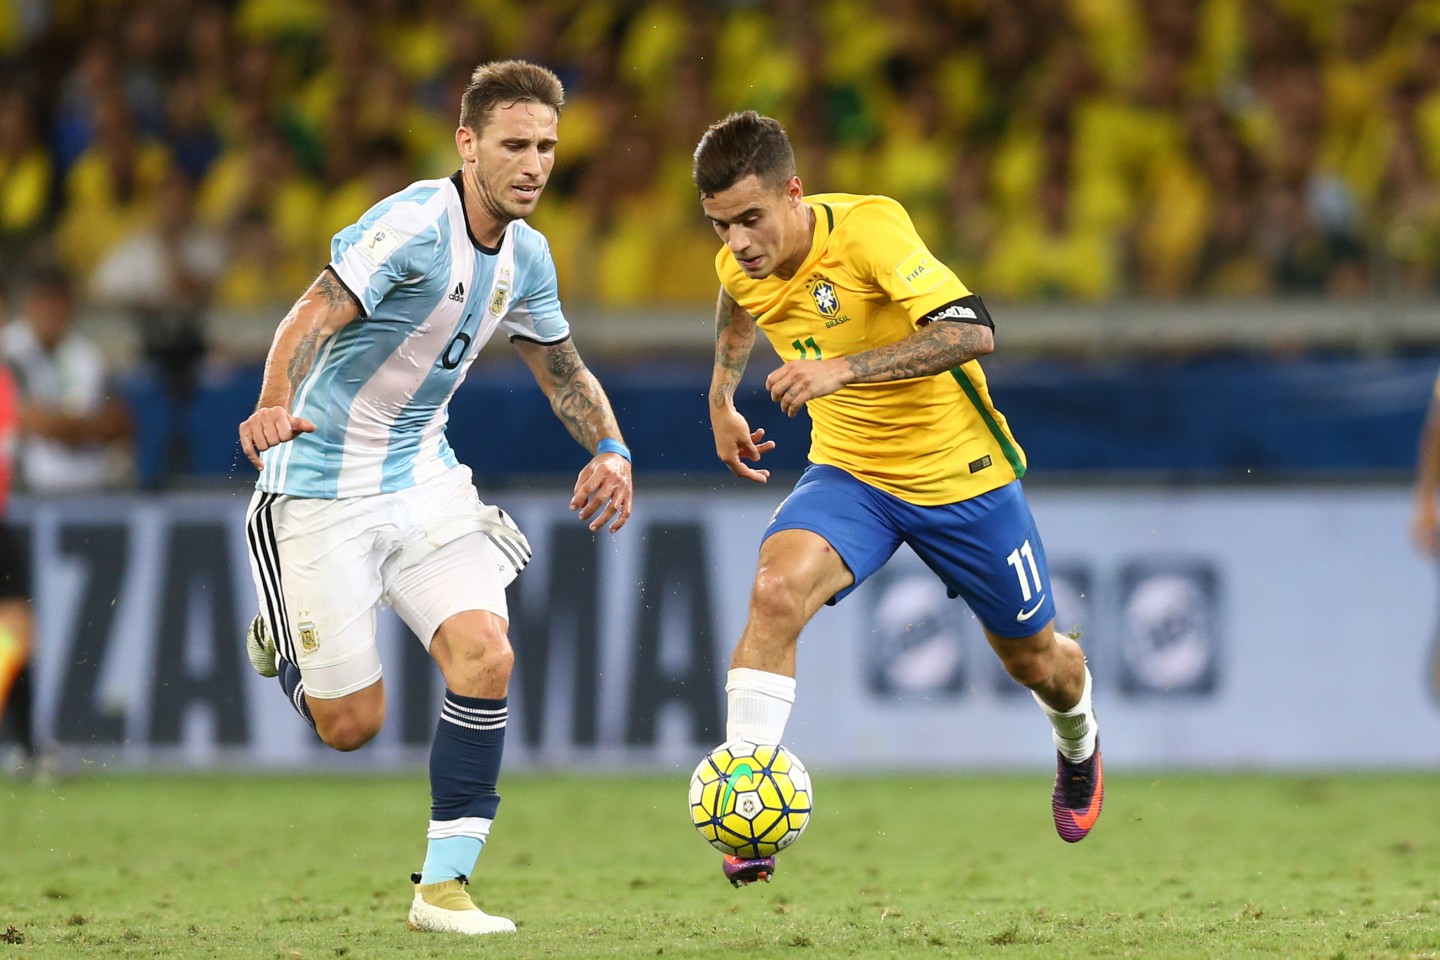 بث مباشر| مشاهدة مباراة الارجنتين والبرازيل